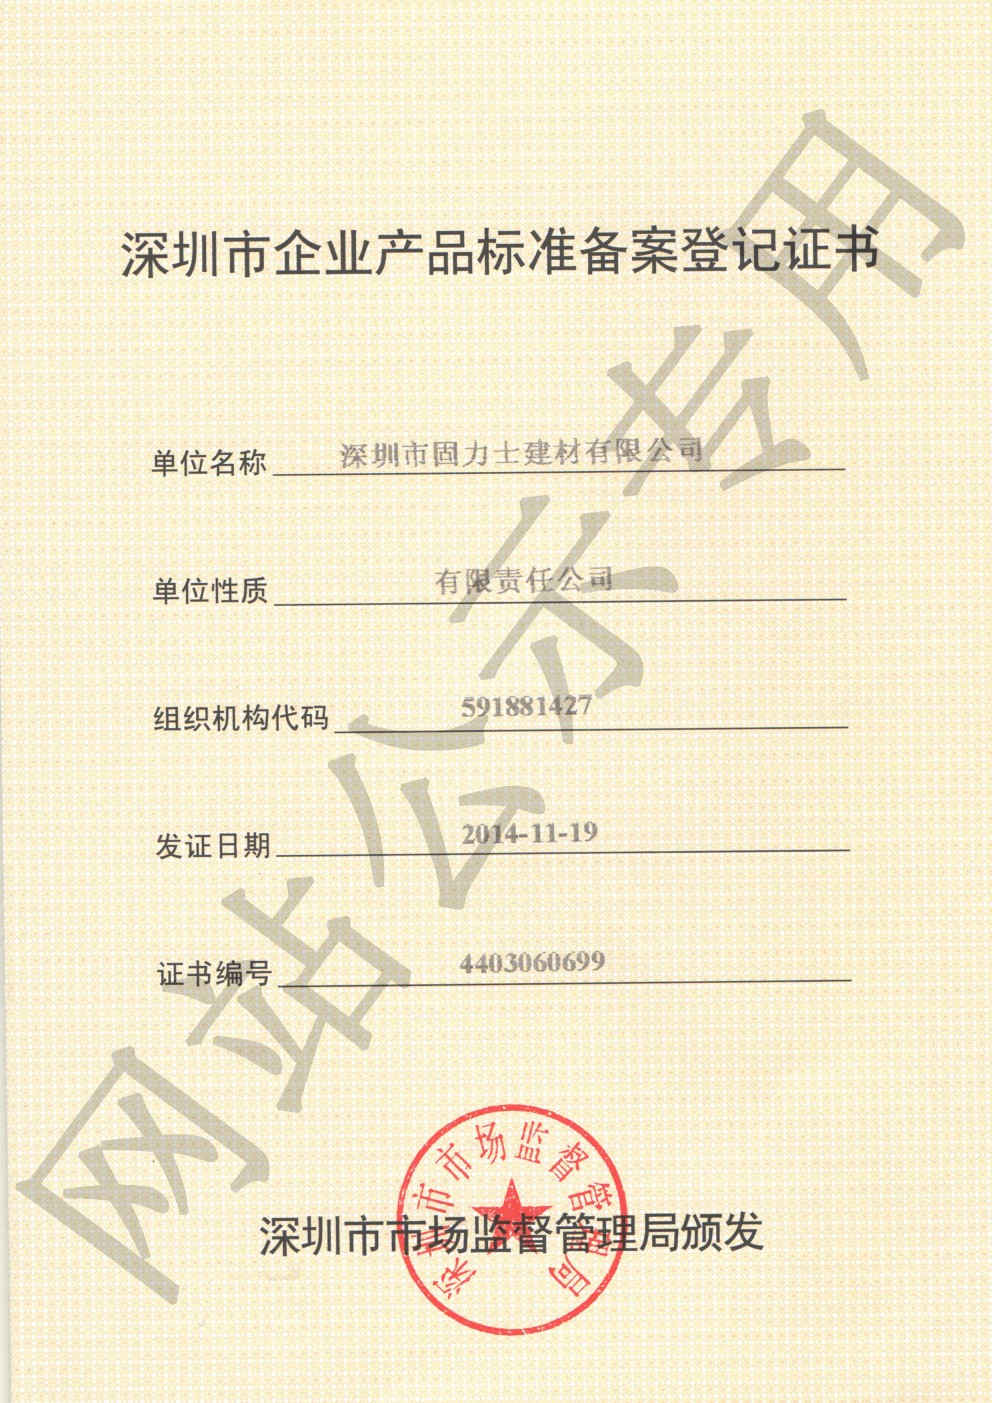 罗平企业产品标准登记证书